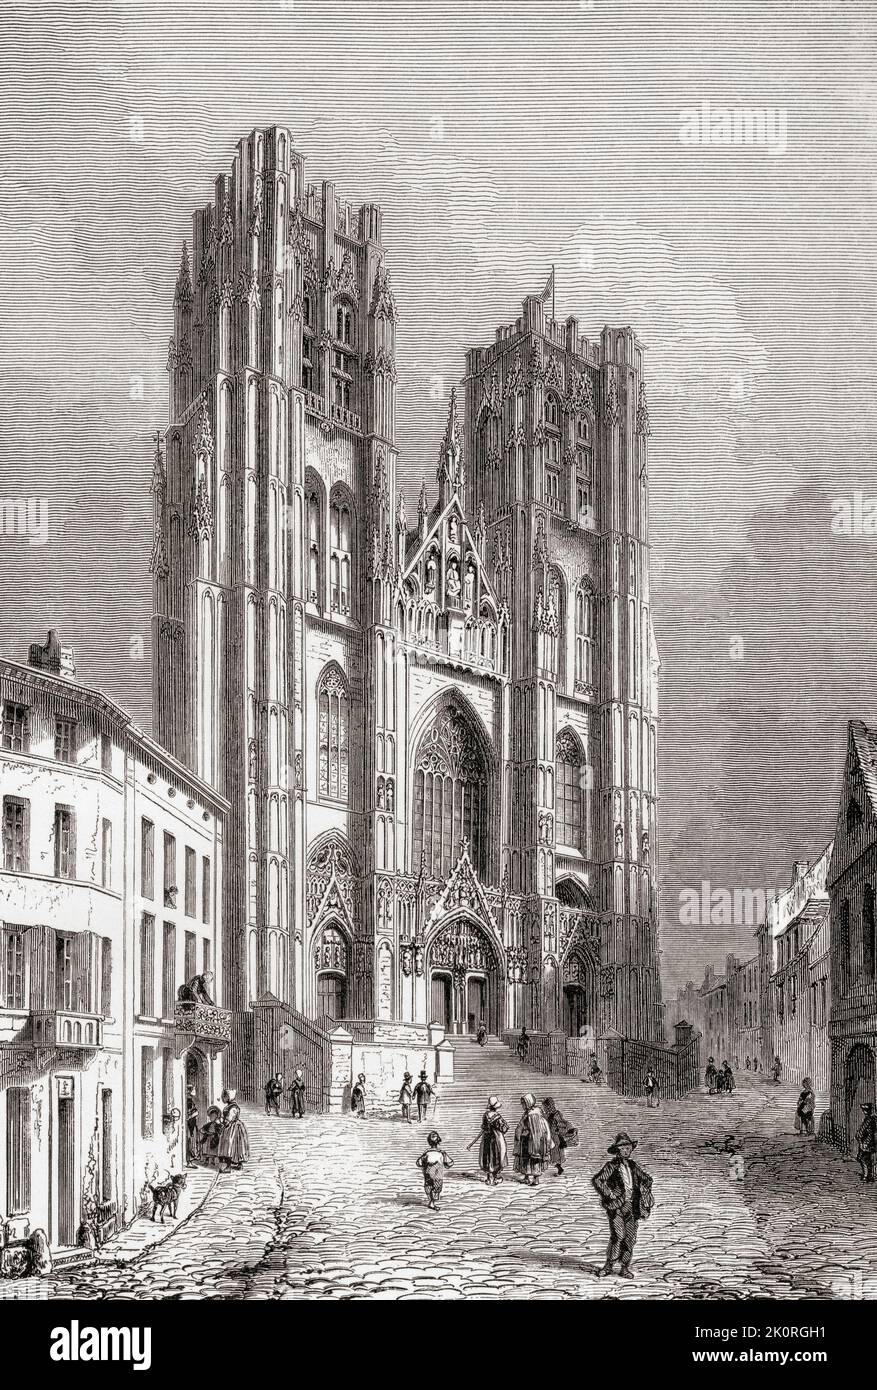 Die Kathedrale von St. Michael und St. Gudula, auch bekannt als Kathedrale von St. Gudula oder St. Gudula, Brüssel, Belgien, hier im 19.. Jahrhundert gesehen. Erbaut 11. - 15. Jahrhunderte ist es der gotischen und brabantinischen gotischen Baustil. Aus Les Plus Belles Eglises du Monde, veröffentlicht 1861. Stockfoto